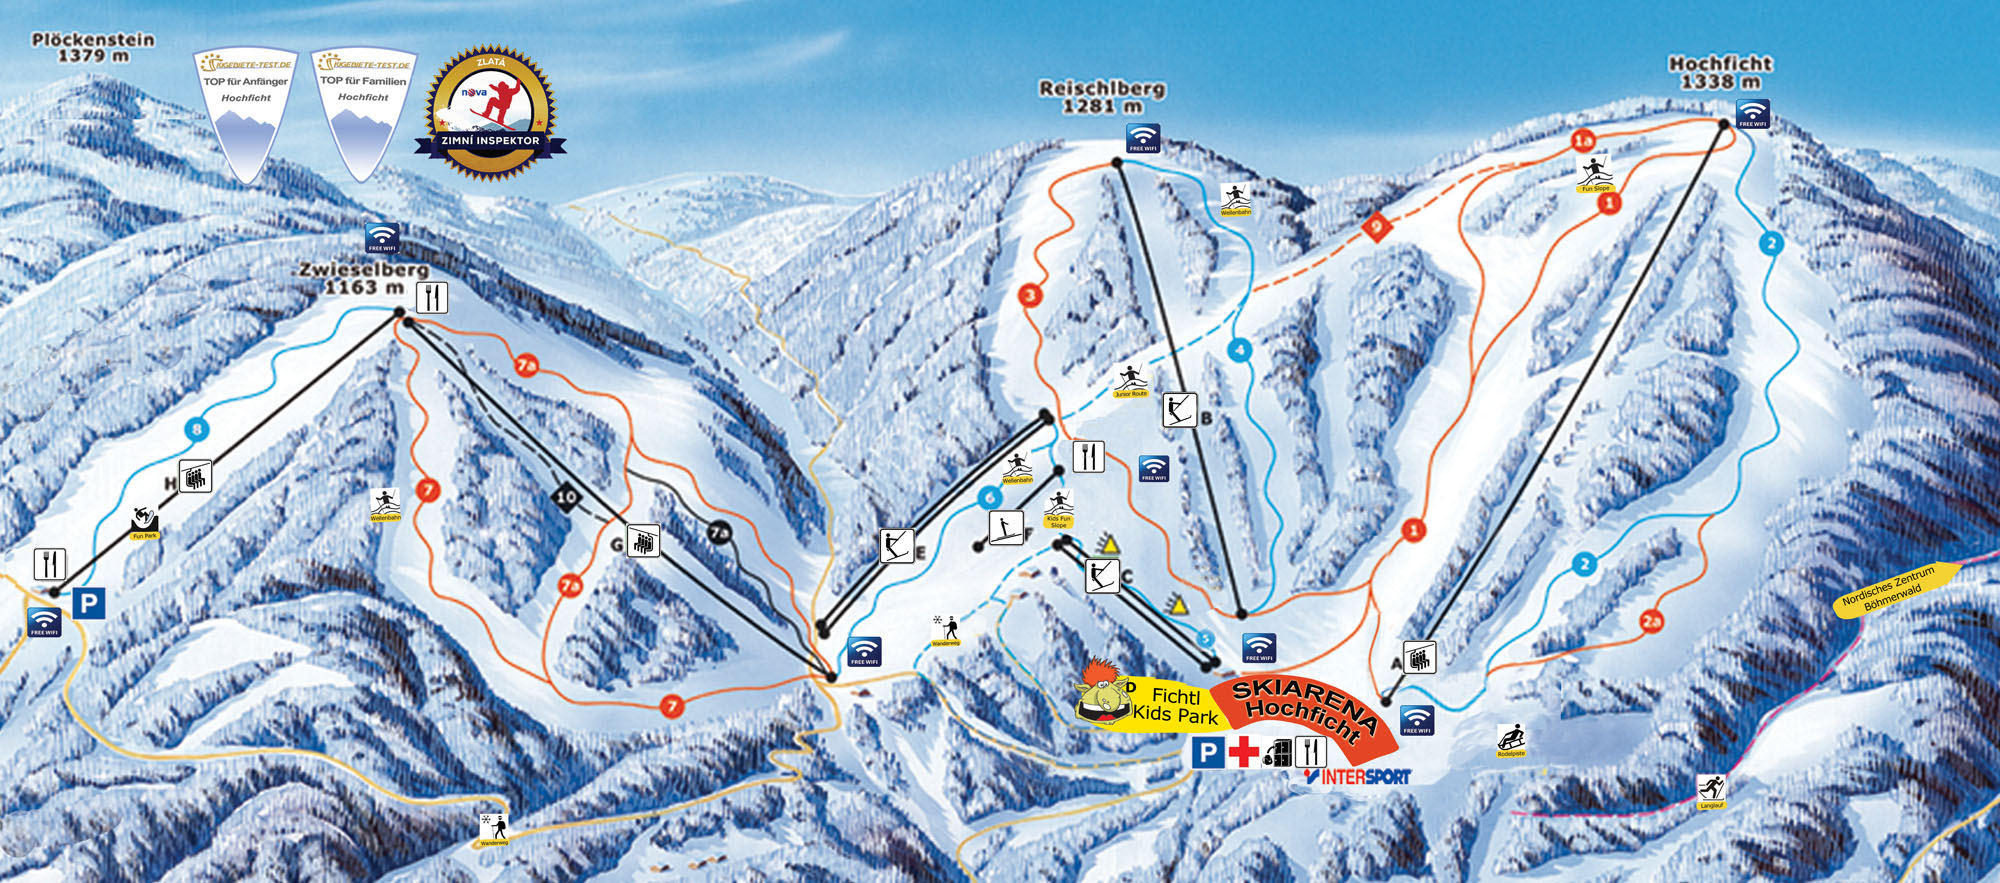 Pistenplan Skigebiet Hochficht